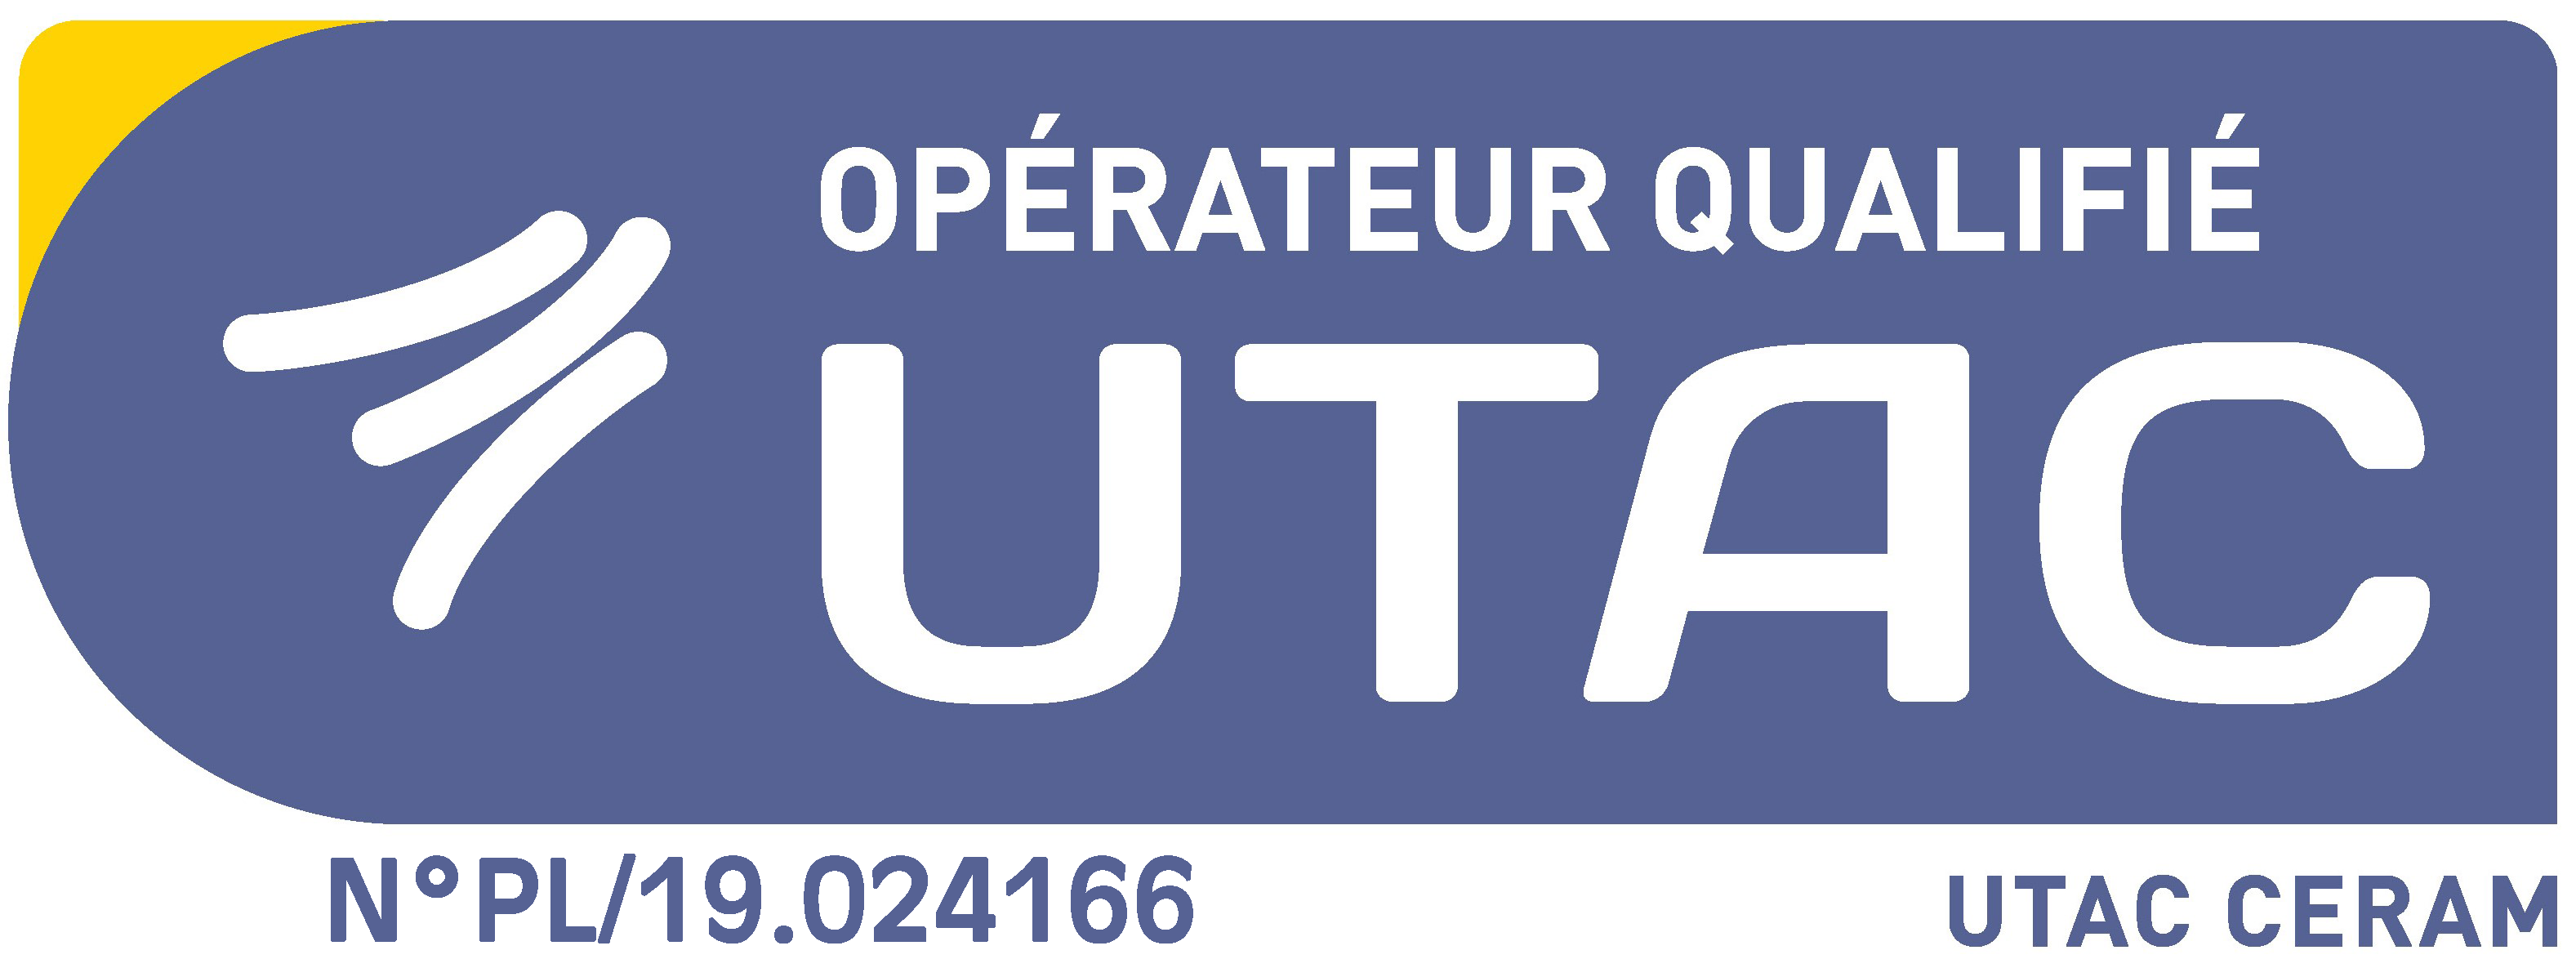 logo-operateur-qualifie-UTAC